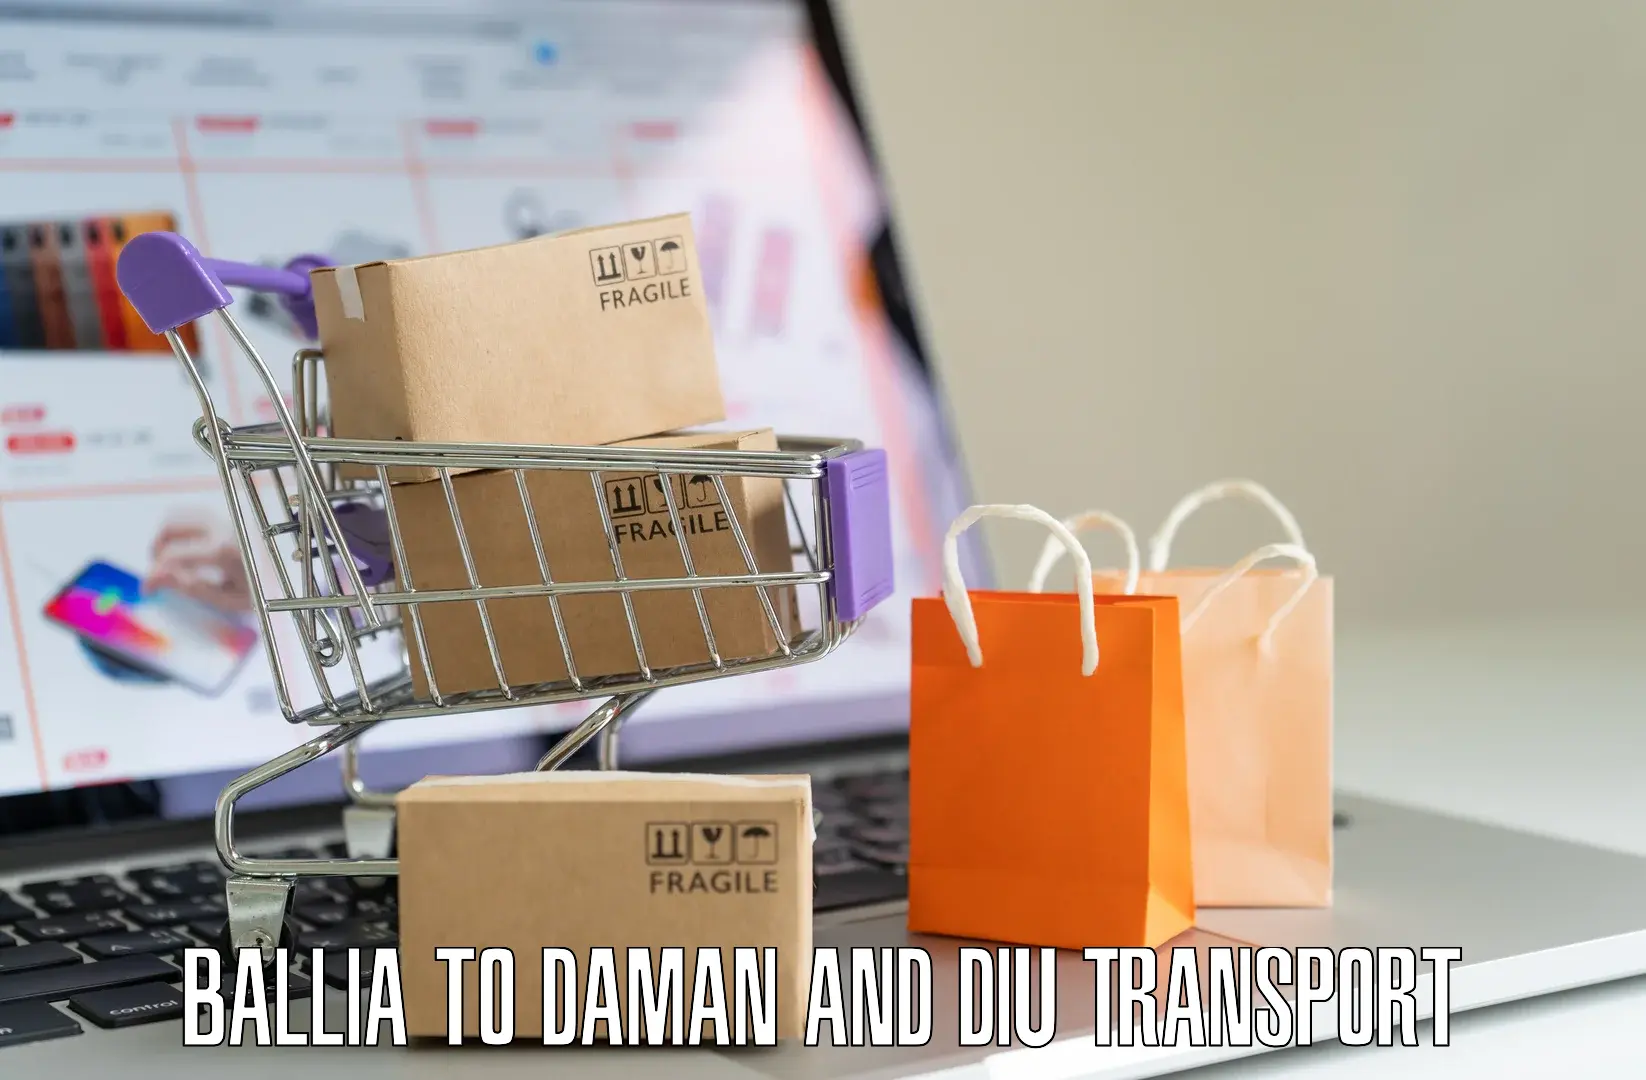 Intercity transport Ballia to Daman and Diu